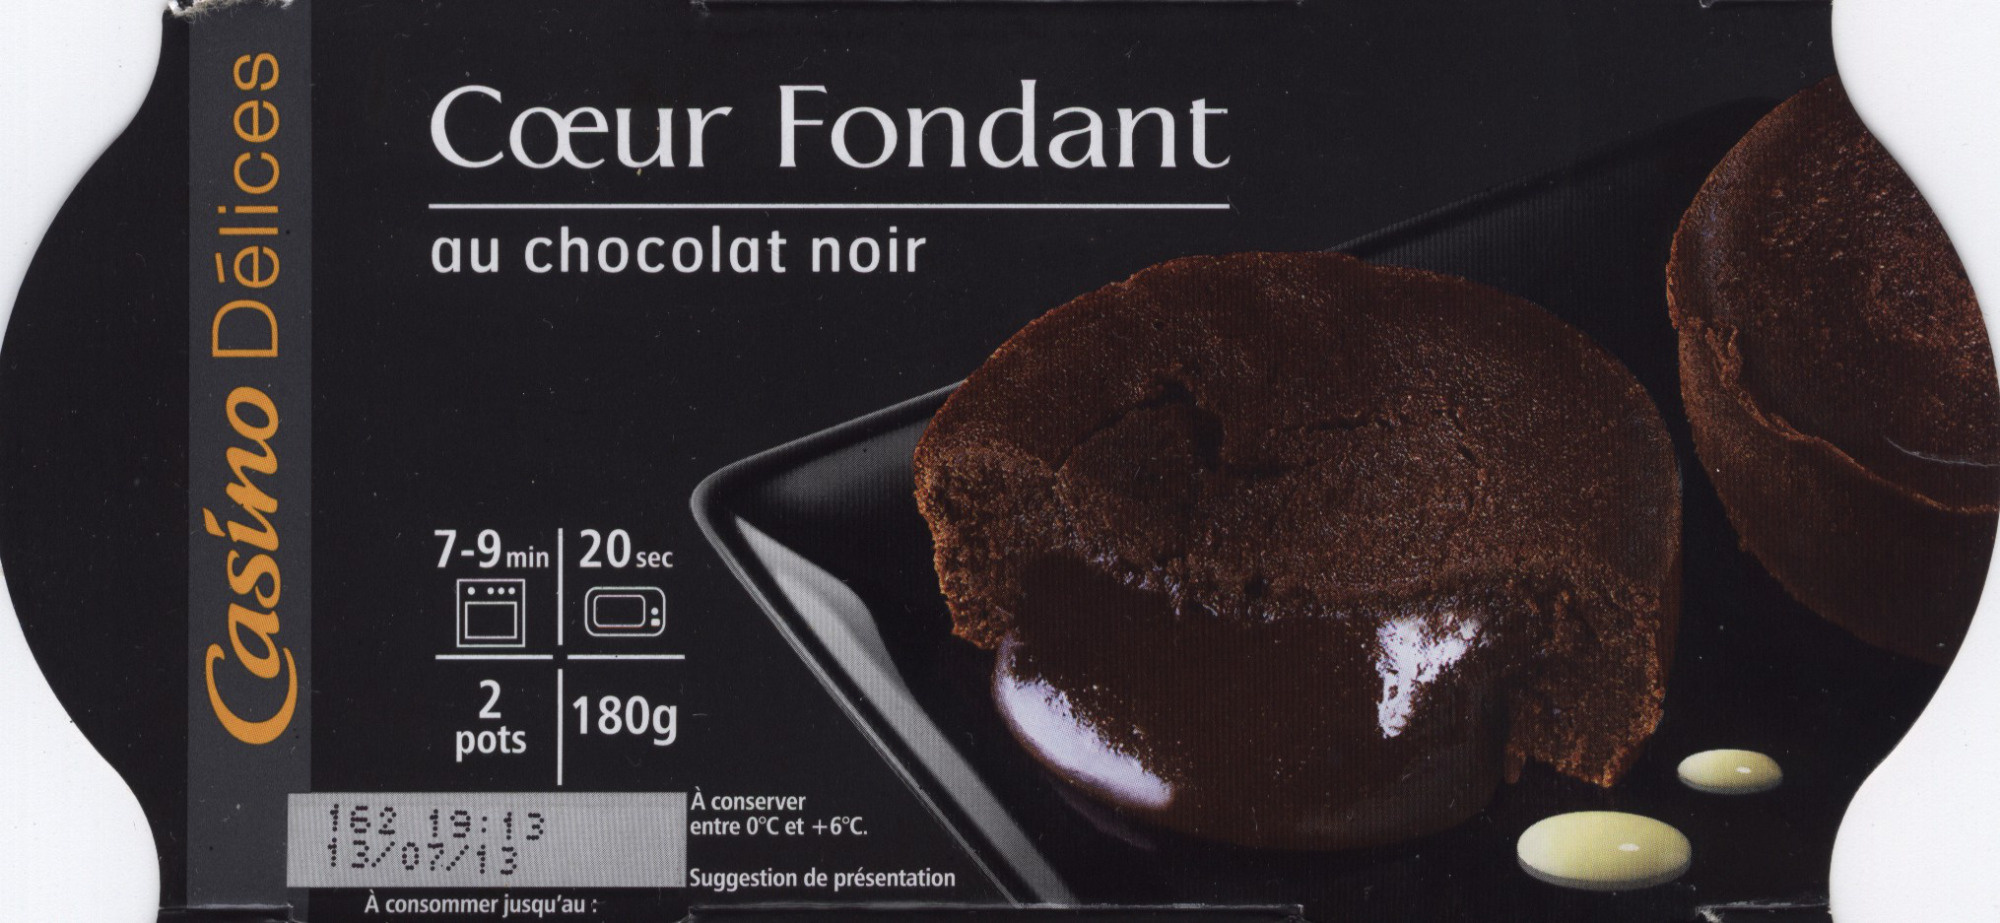 Coeur fondant - Au chocolat noir - Produit - fr